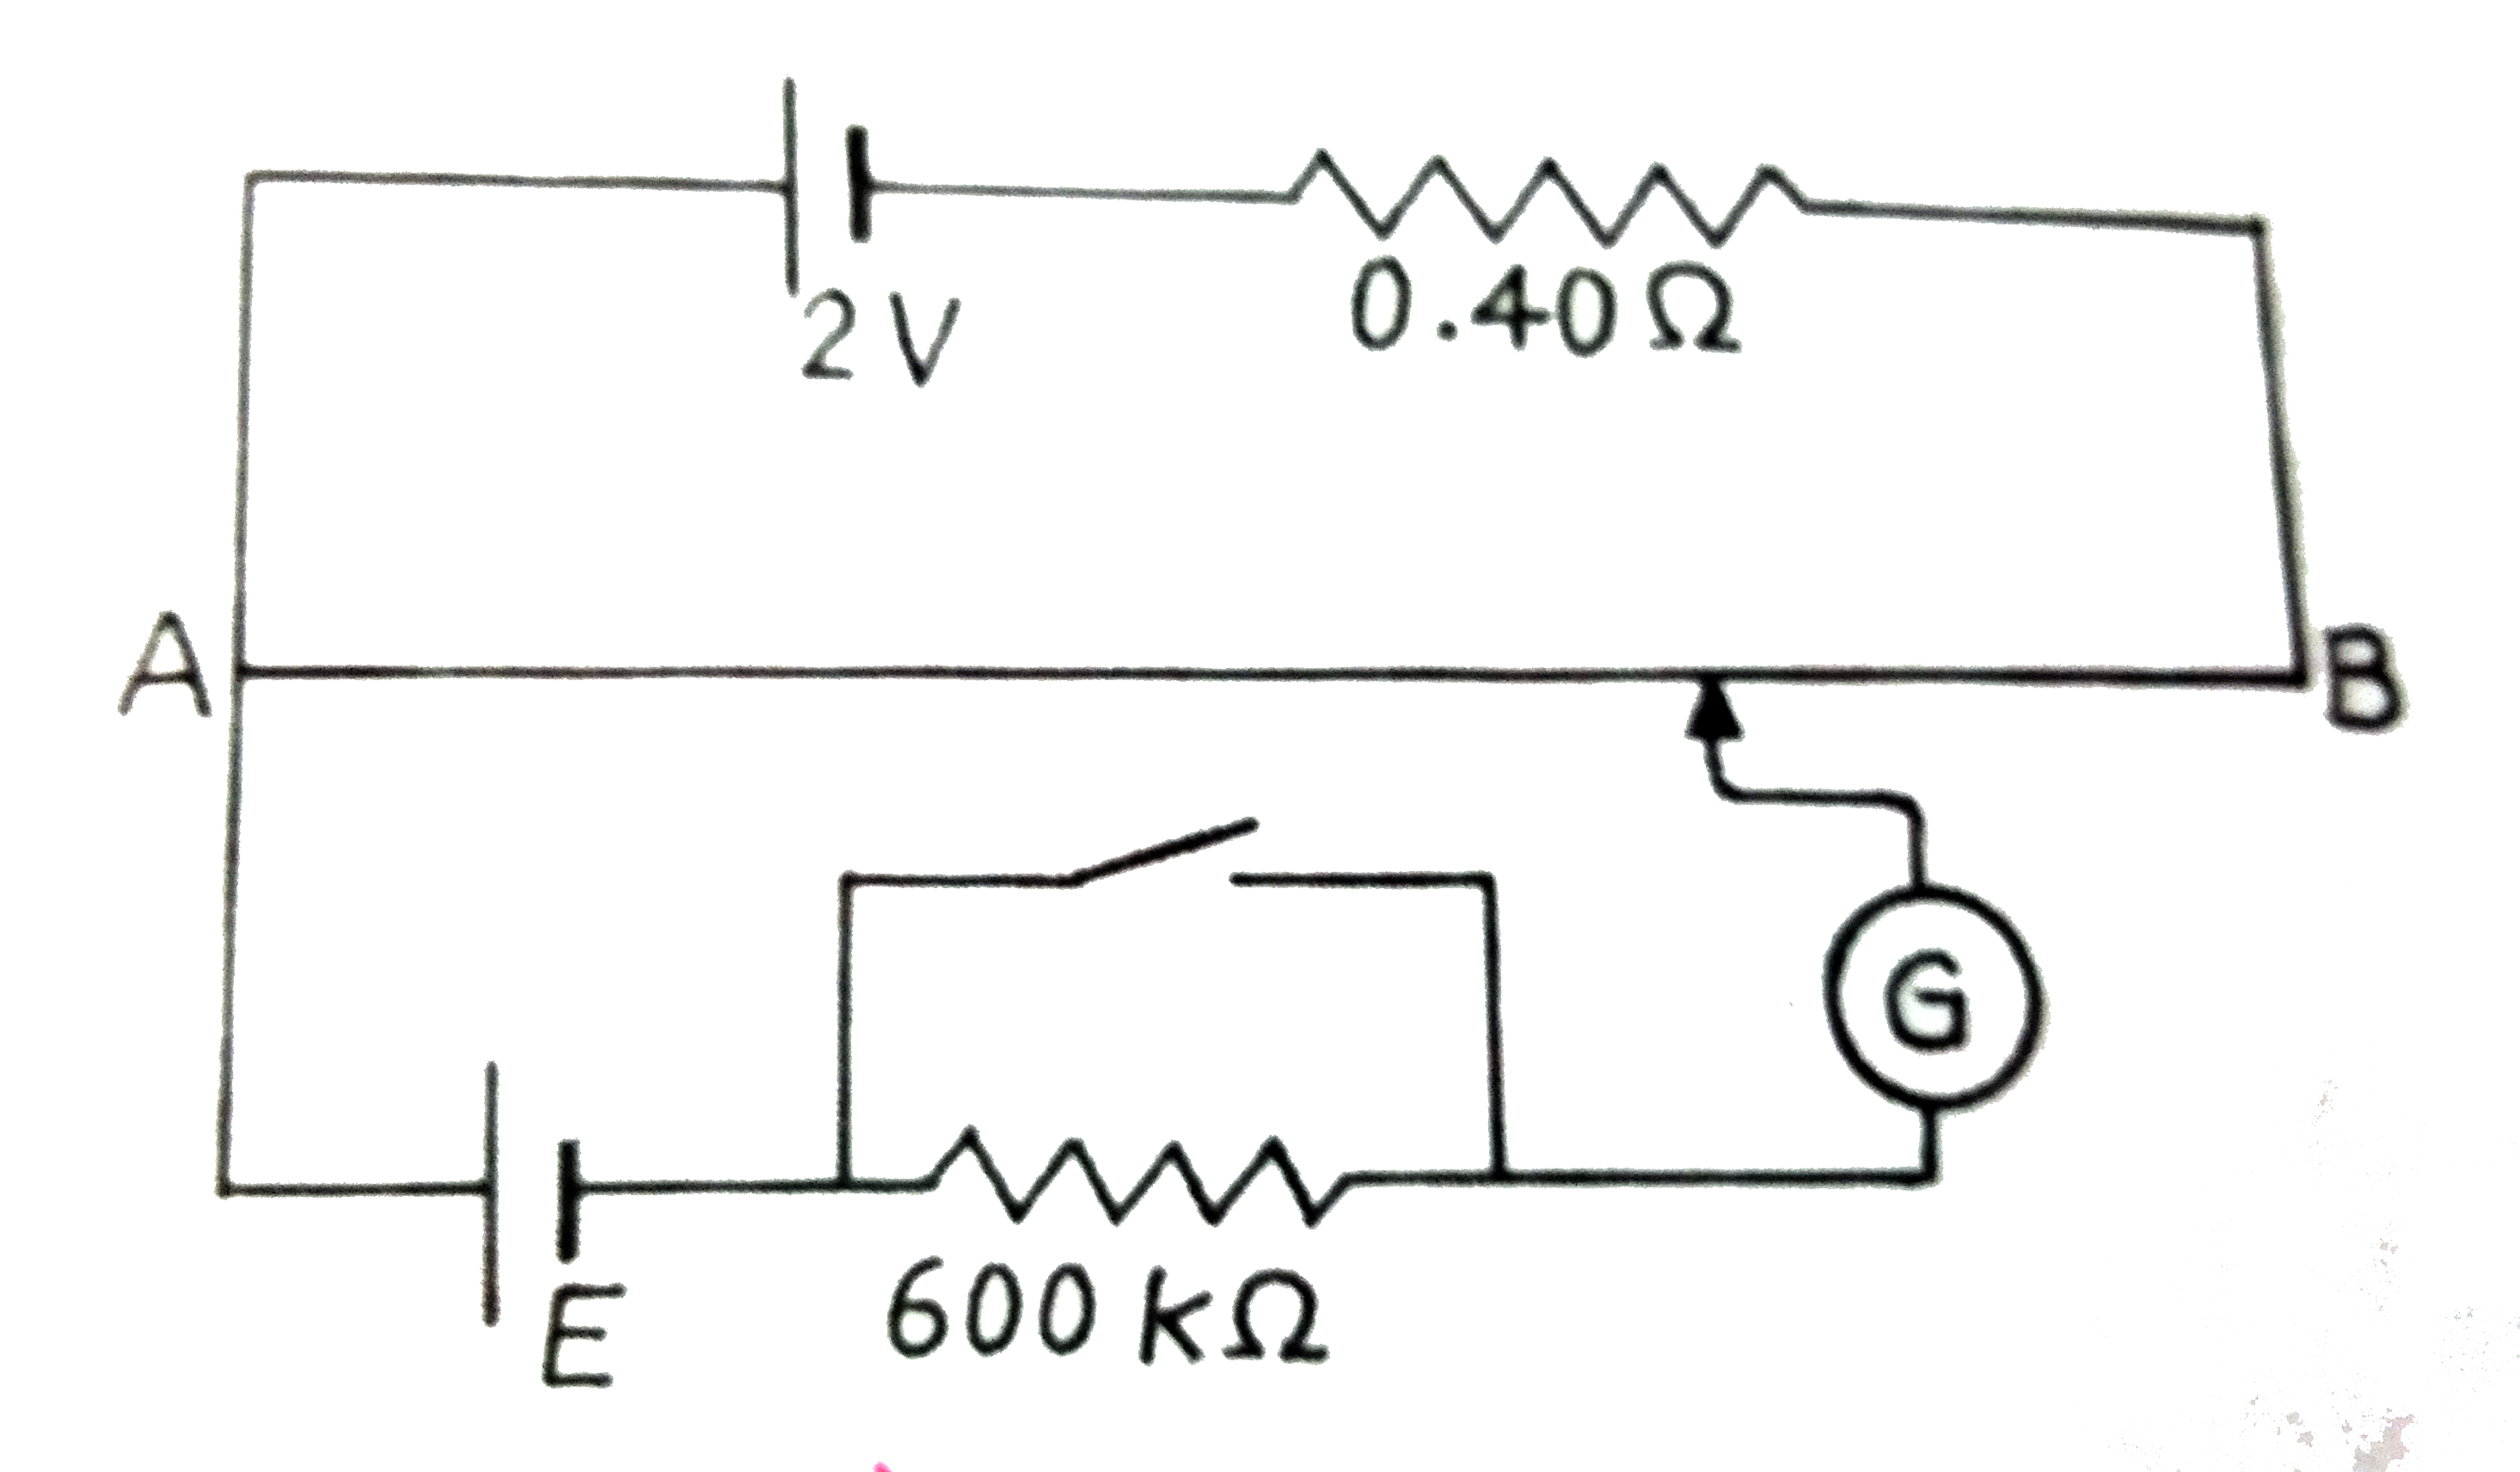 चित्र  में एक  विभवमापी  दर्शाया गया है , जिससे  एक  2.0 V           और आंतरिक प्रतिरोध  0.40 Omega    का कोई  सेल , विभवमापी  के  प्रतिरोधक तार AB पर वोल्टता  पात  बनाए रखना  है । कोई  मानक  सेल जो  1.02     वोल्ट का अचर विधुत  वाहक  बल  बनाए  रखता  है ( कूछ मिलीऐम्पियर  की  बहुत  सामान्य  धाराओं  के लिए )  तार की 67.3    सेमी  लम्बाई  पर संतुलन  बिंदु देता है । मानक सेल से अति  न्यून  धारा लेना  सुनिश्चित  करने के लिए  इसके साथ  परिपथ  में श्रेणी  600 k Omega      का एक  अति उच्च  प्रतिरोध  इसके  साथ  संबद्ध  किया जाता है , जिससे  संतुलन बिंदु प्राप्त होने के निकट  लघुपथित (shorted)      कर  दिया  जाता है । इसके बाद मानक सेल को किसी  अज्ञात  विधुत  वाहक  बल E  के सेल से प्रतिस्थापित  कर दिया जाता है , जिससे  संतुलन  बिंदु तार की  82.3    सेमी लम्बाई  पर प्राप्त होता है ।      (a) E का मान क्या है ?   (b) 600k Omega के उच्च प्रतिरोध  का क्या प्रयोजन है ?  (c ) क्या इस उच्च प्रतिरोध  से संतुलन  बिंदु प्रभावित  होता है ?  (d) उपरोक्त स्थिति में यदि विभवमापी के परिचालक  सेल का विधु वाहक  बल 2.0    वोल्ट  के स्थान पर 1.0   वोल्ट  हो तो  क्या यह विधि फिर  भी सफल रहेगी ?   (e) क्या यह परिपथ  कुछ  मिलीवोल्ट  की कोटि के अत्यल्प  विधुत  वाहक  बलों ( जैसे  कि किसी प्रारूपी  तापवैधुत  युग्म  का विधुत  वाहक  बल ) के निर्धारण  में सफल  होगी ? यदि  नहीं तो  आप इसमें किस प्रकार संशोधन  करेंगे ?